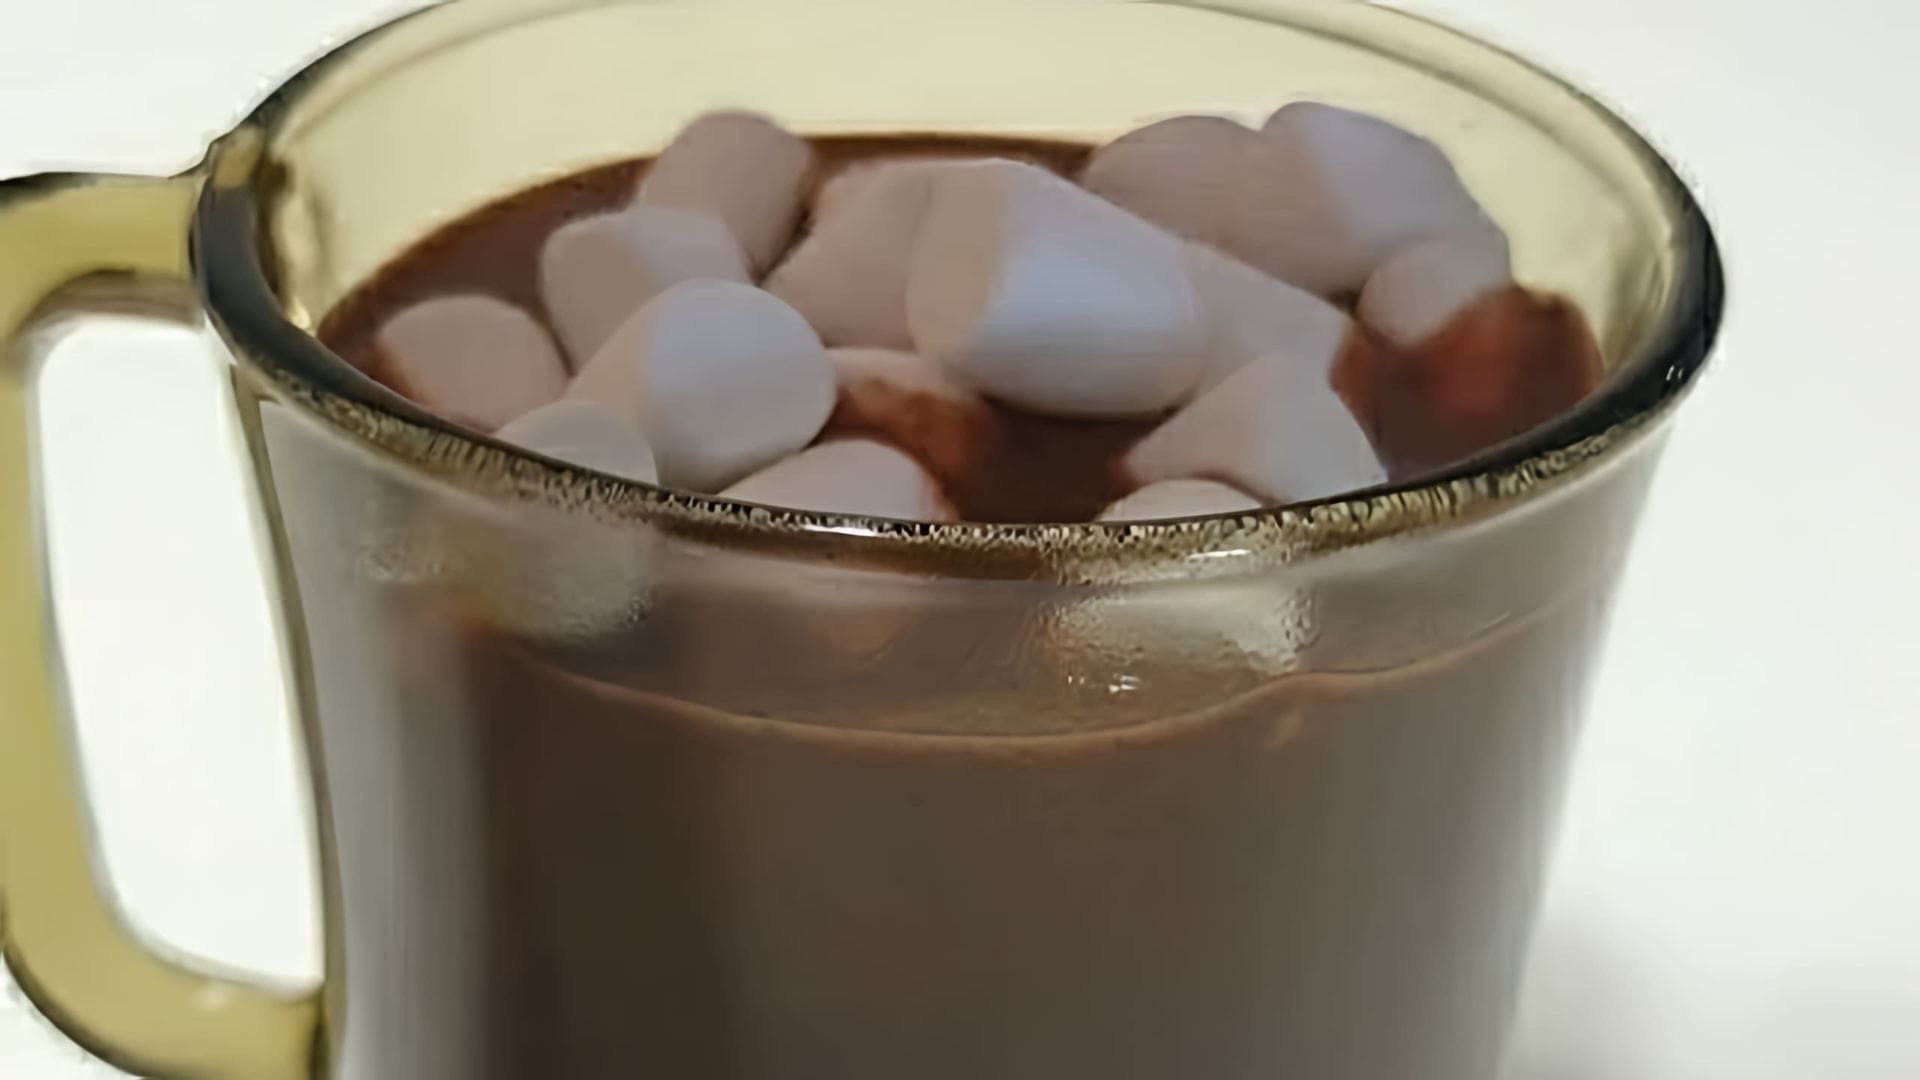 "Самый вкусный и простой горячий шоколад" - это видео-ролик, который демонстрирует, как приготовить горячий шоколад, используя простые и доступные ингредиенты